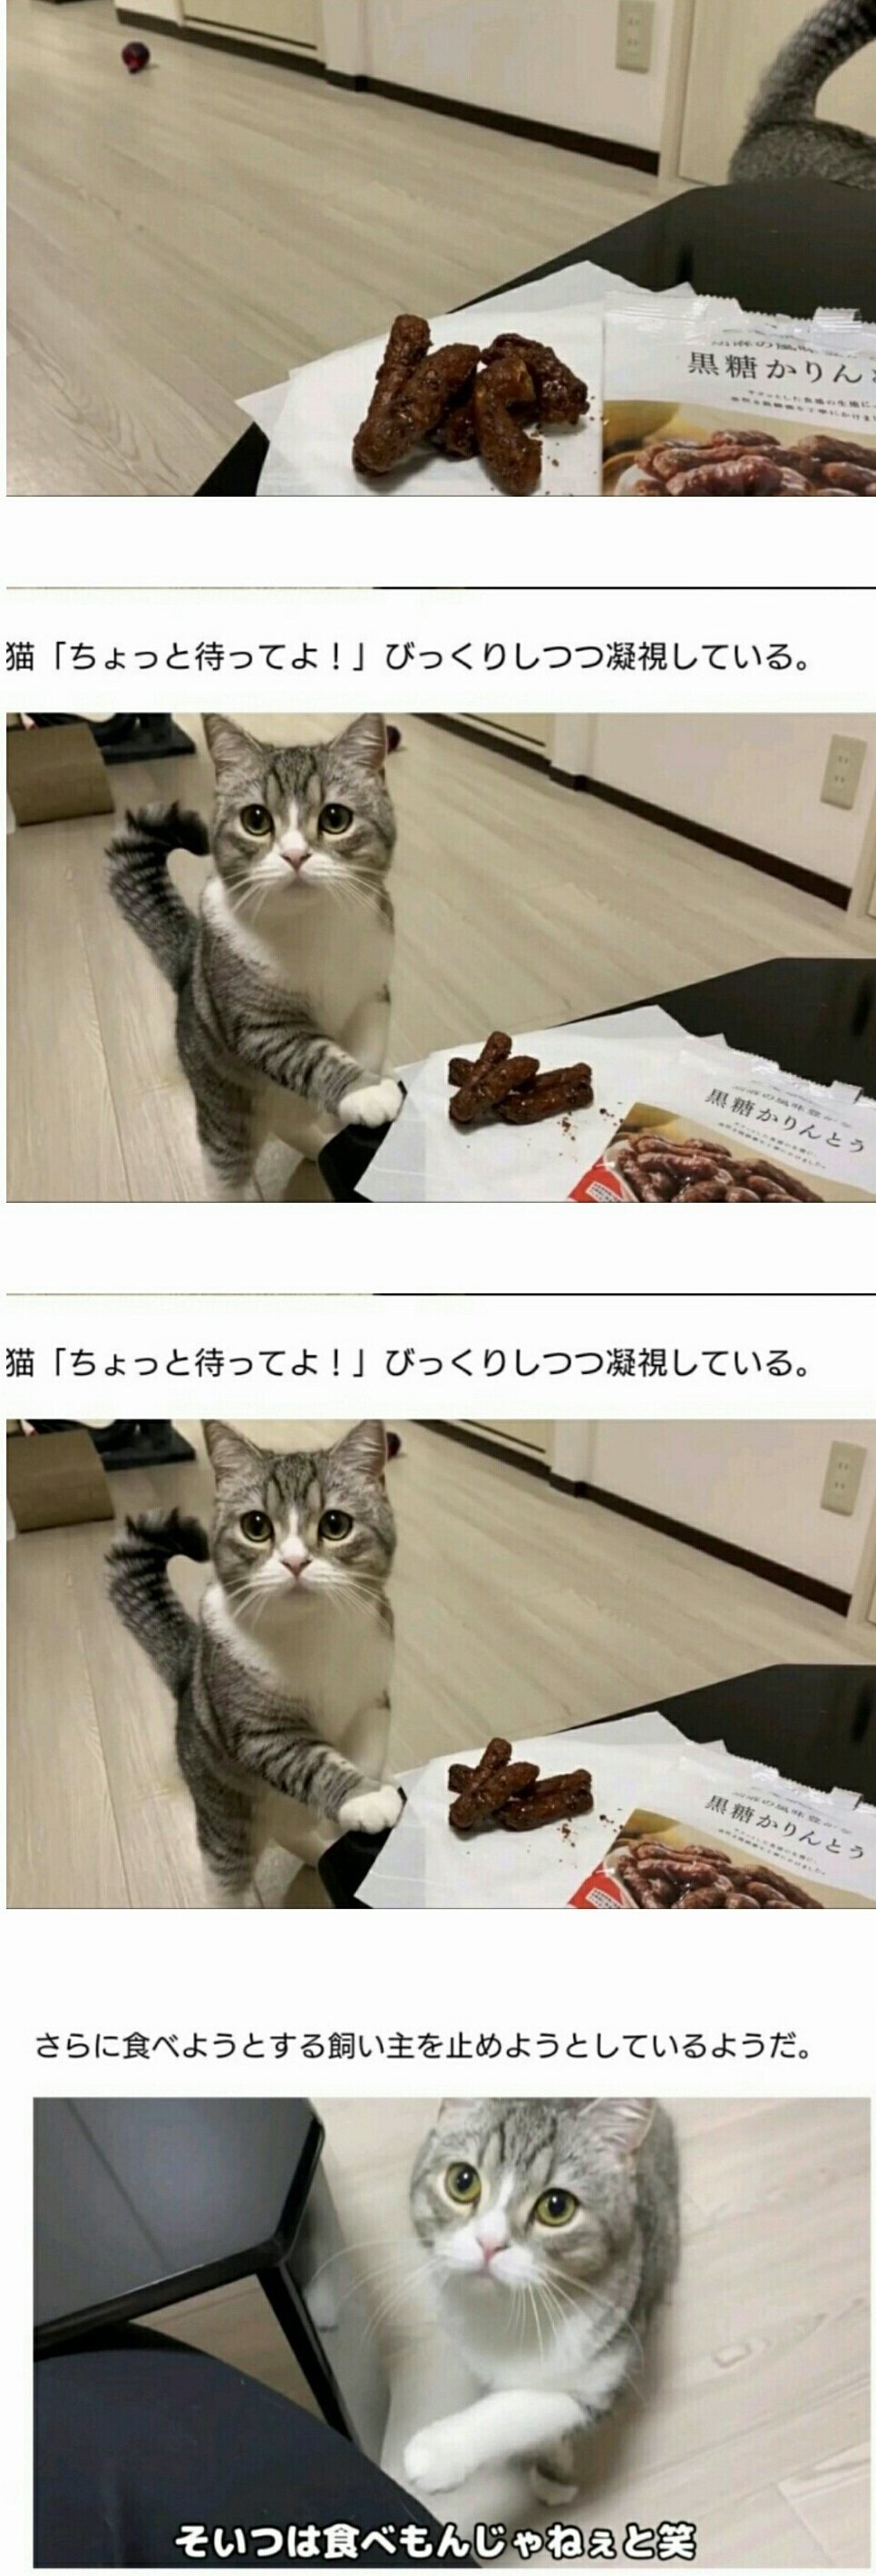 과자먹으려는 집사를 말리는 고양이.jpg